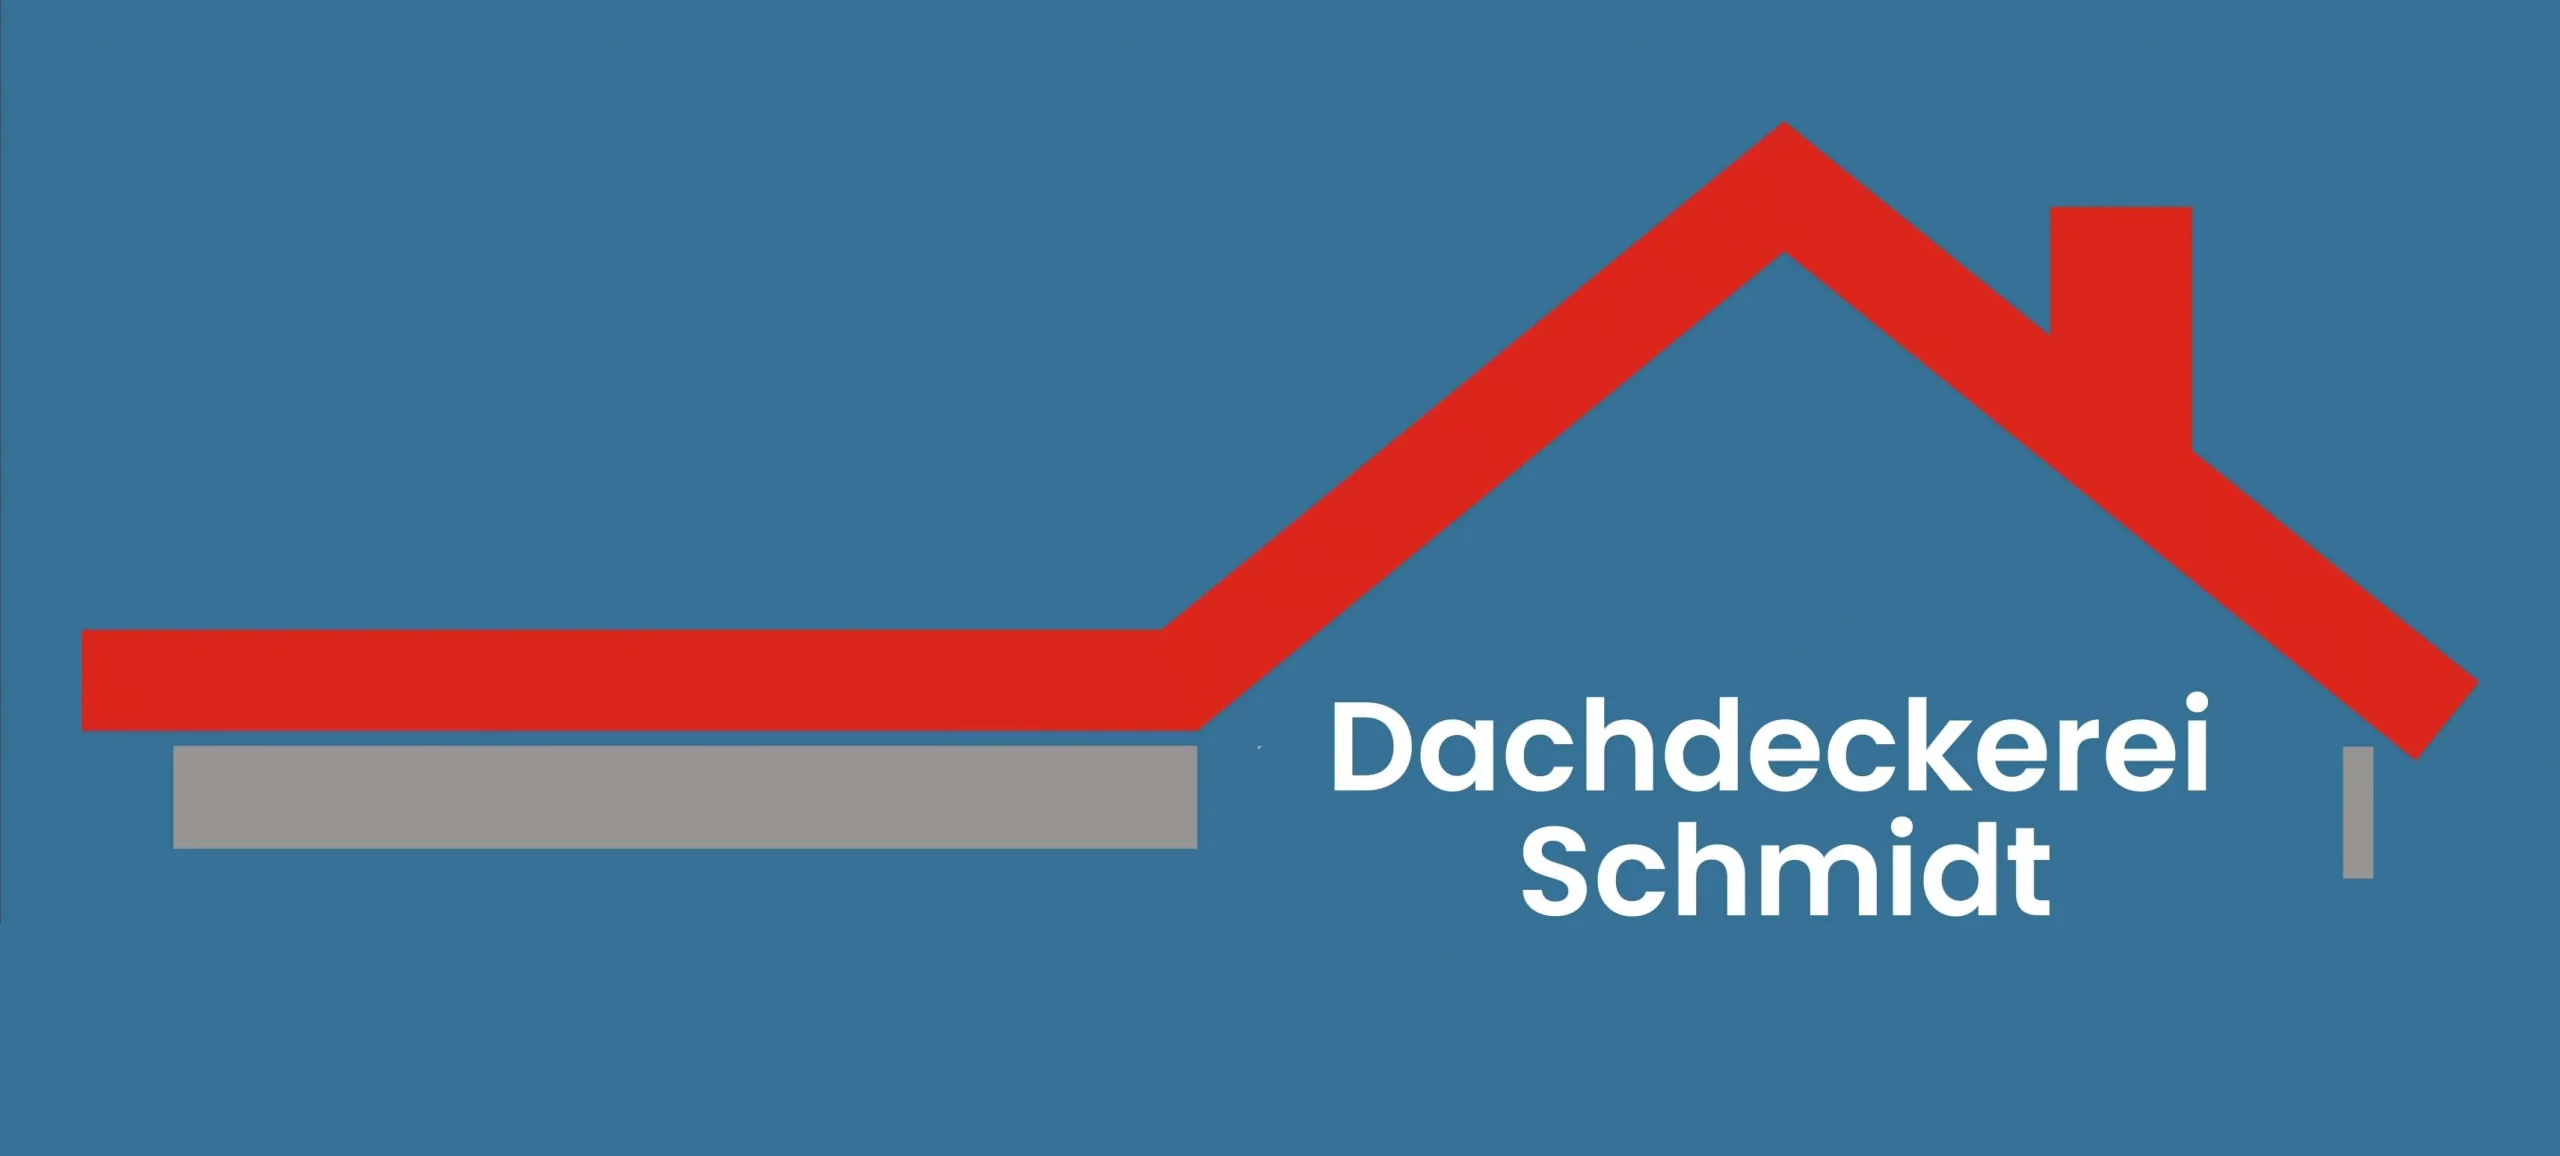 Dachdeckerei Schmidt Logo